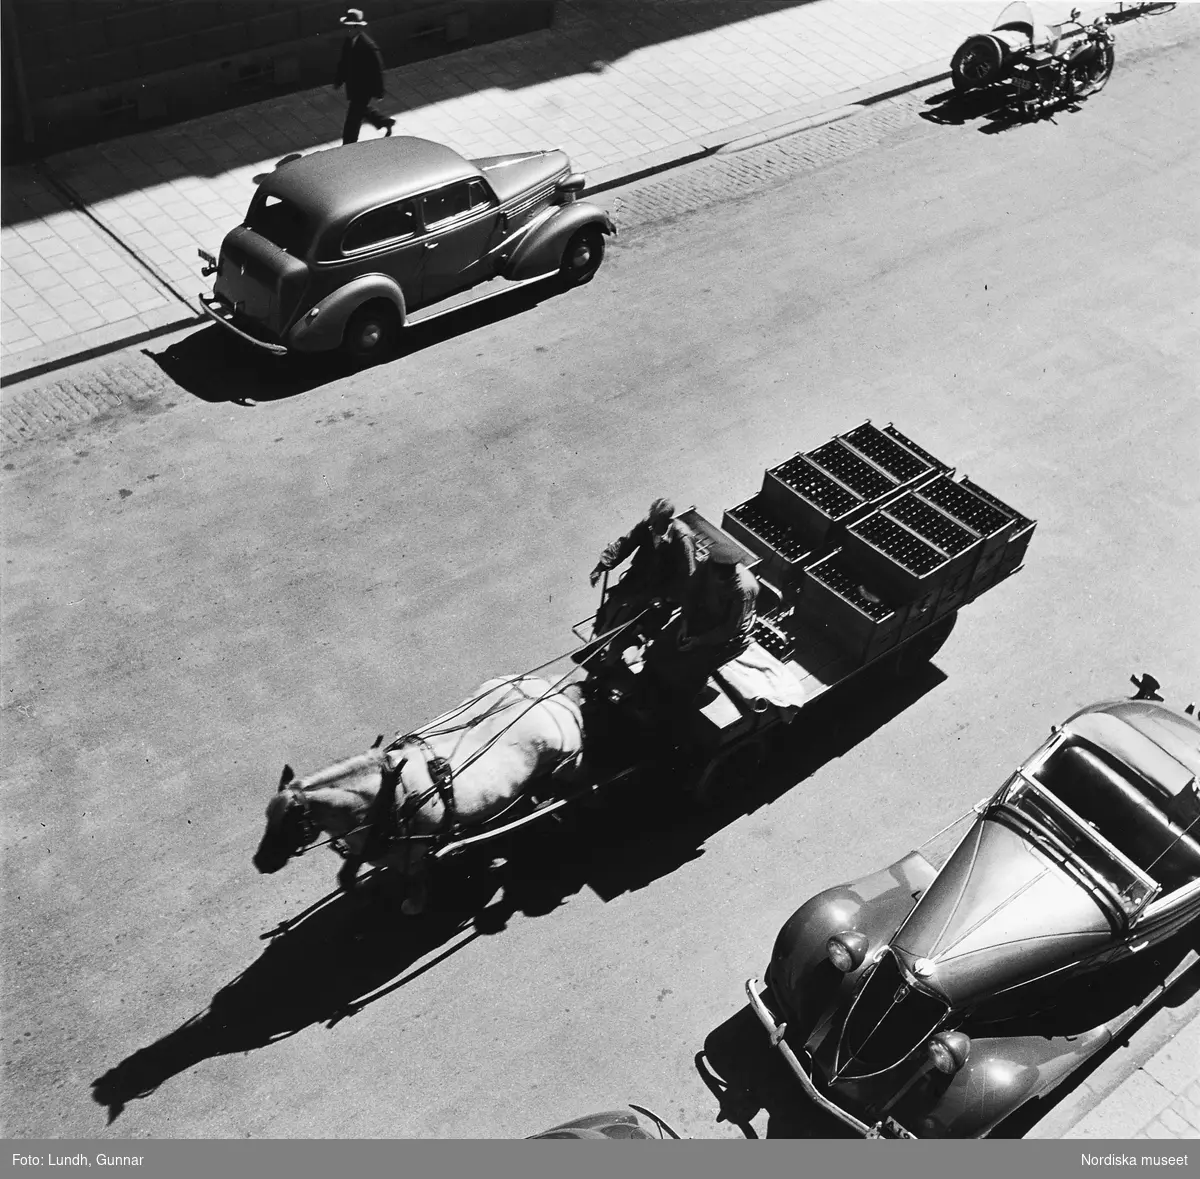 Döbelnsgatan, Stockholm, fotograferad från Gunnar Lundhs bostad. Hästvagn från AB Stockholmsbryggerier lastad med ölbackar kör på gatan. På andra sidan gatan en Chevrolet och en Harley Davidson. Närmast i bild en Studebaker av 1934 års modell.